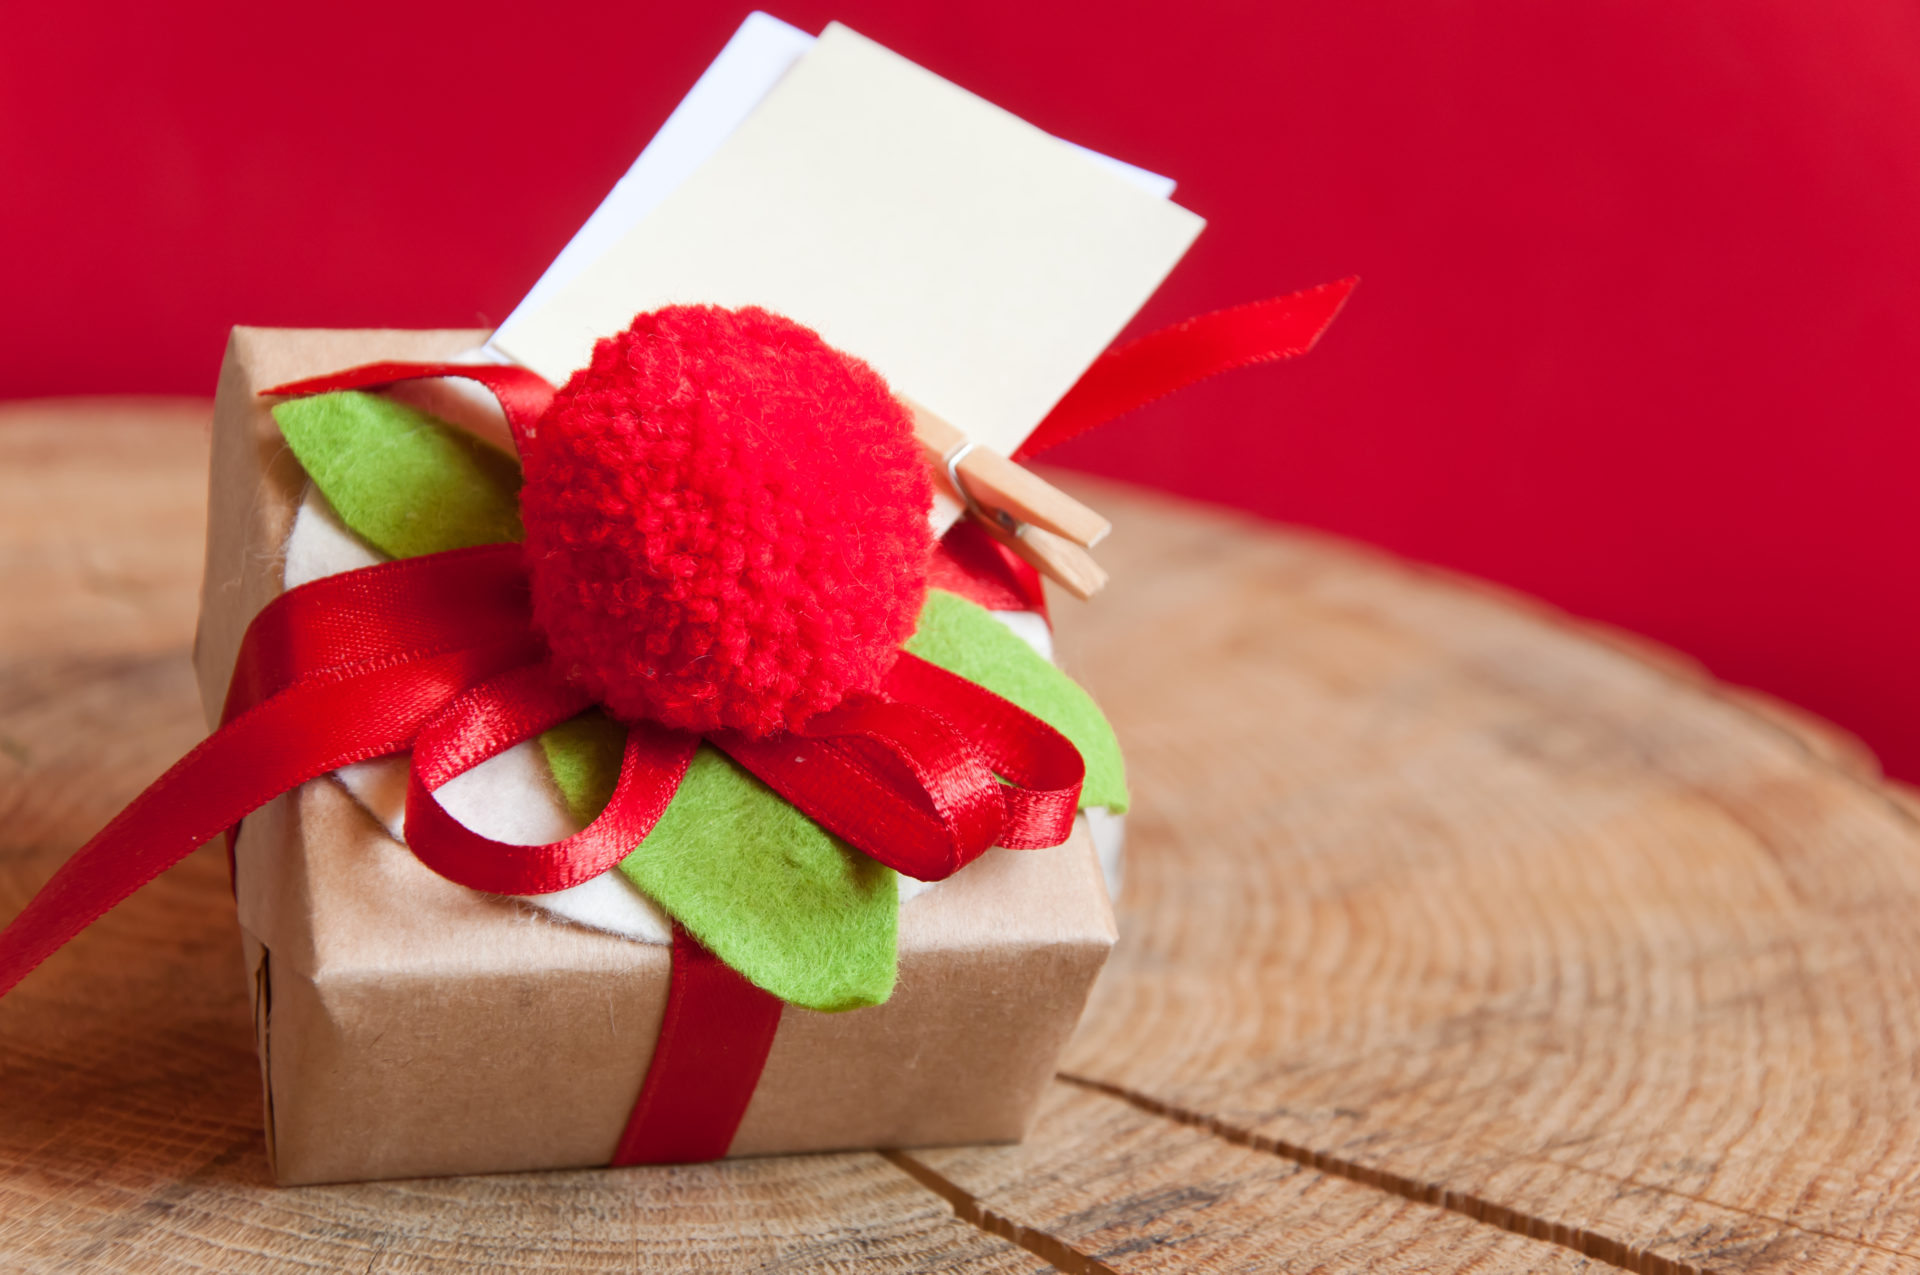 Comment emballer joliment vos cadeaux ?